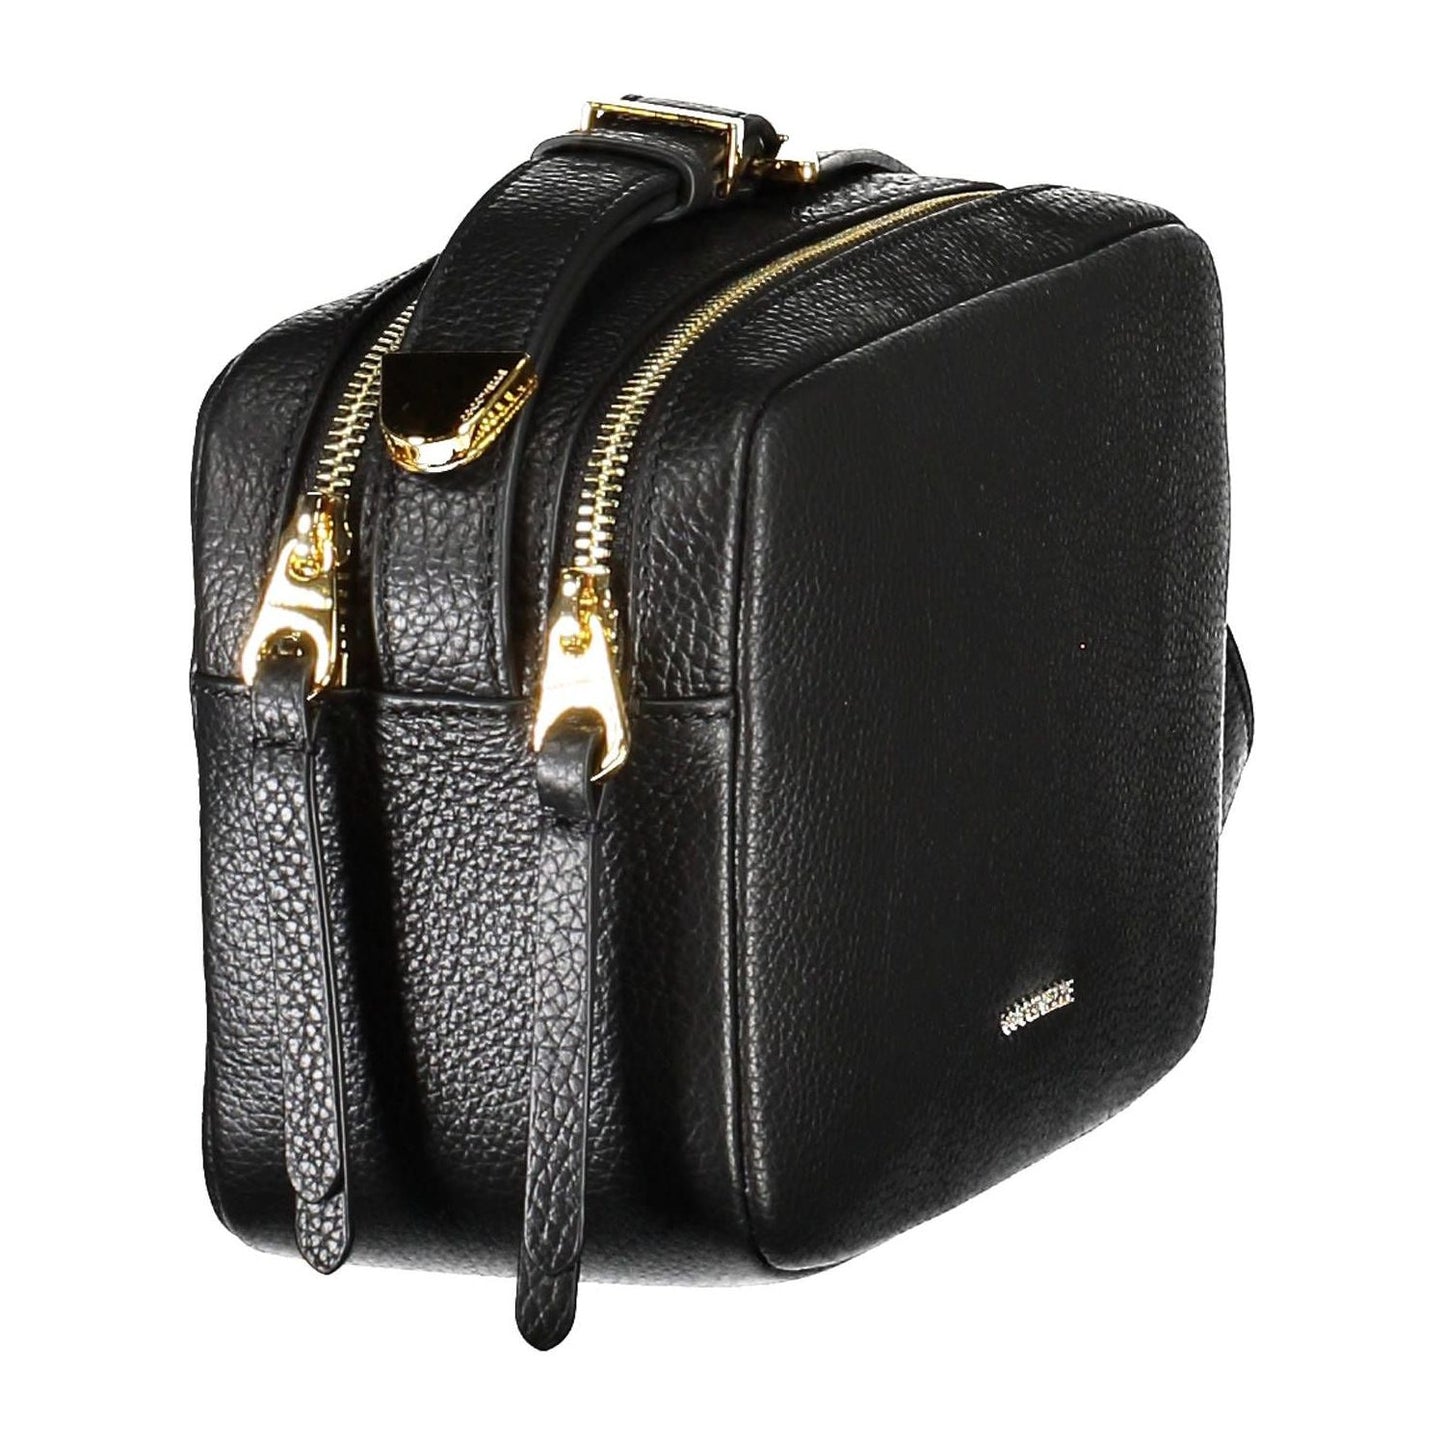 Coccinelle Elegant Black Leather Shoulder Bag with Logo elegant-black-leather-shoulder-bag-with-logo